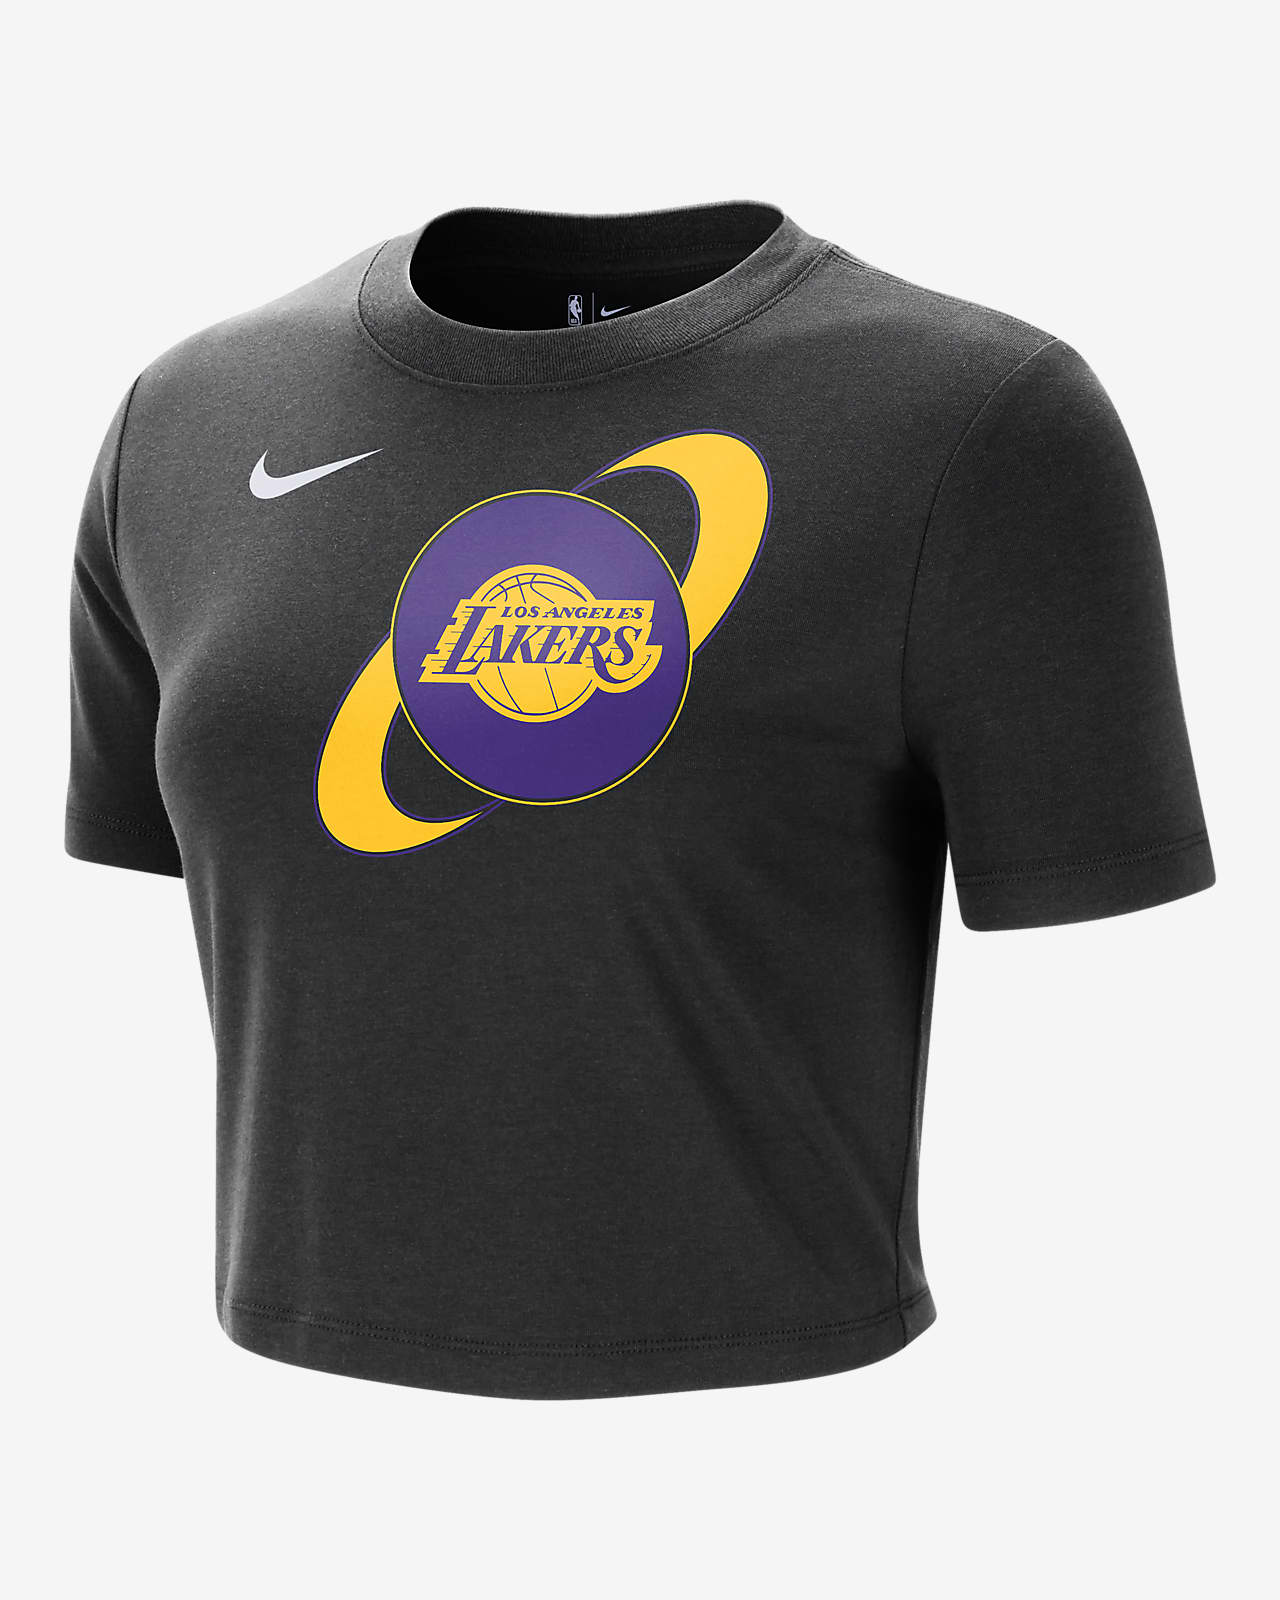 Los Angeles Lakers Courtside Nike rövid szabású, karcsúsított női NBA-s póló